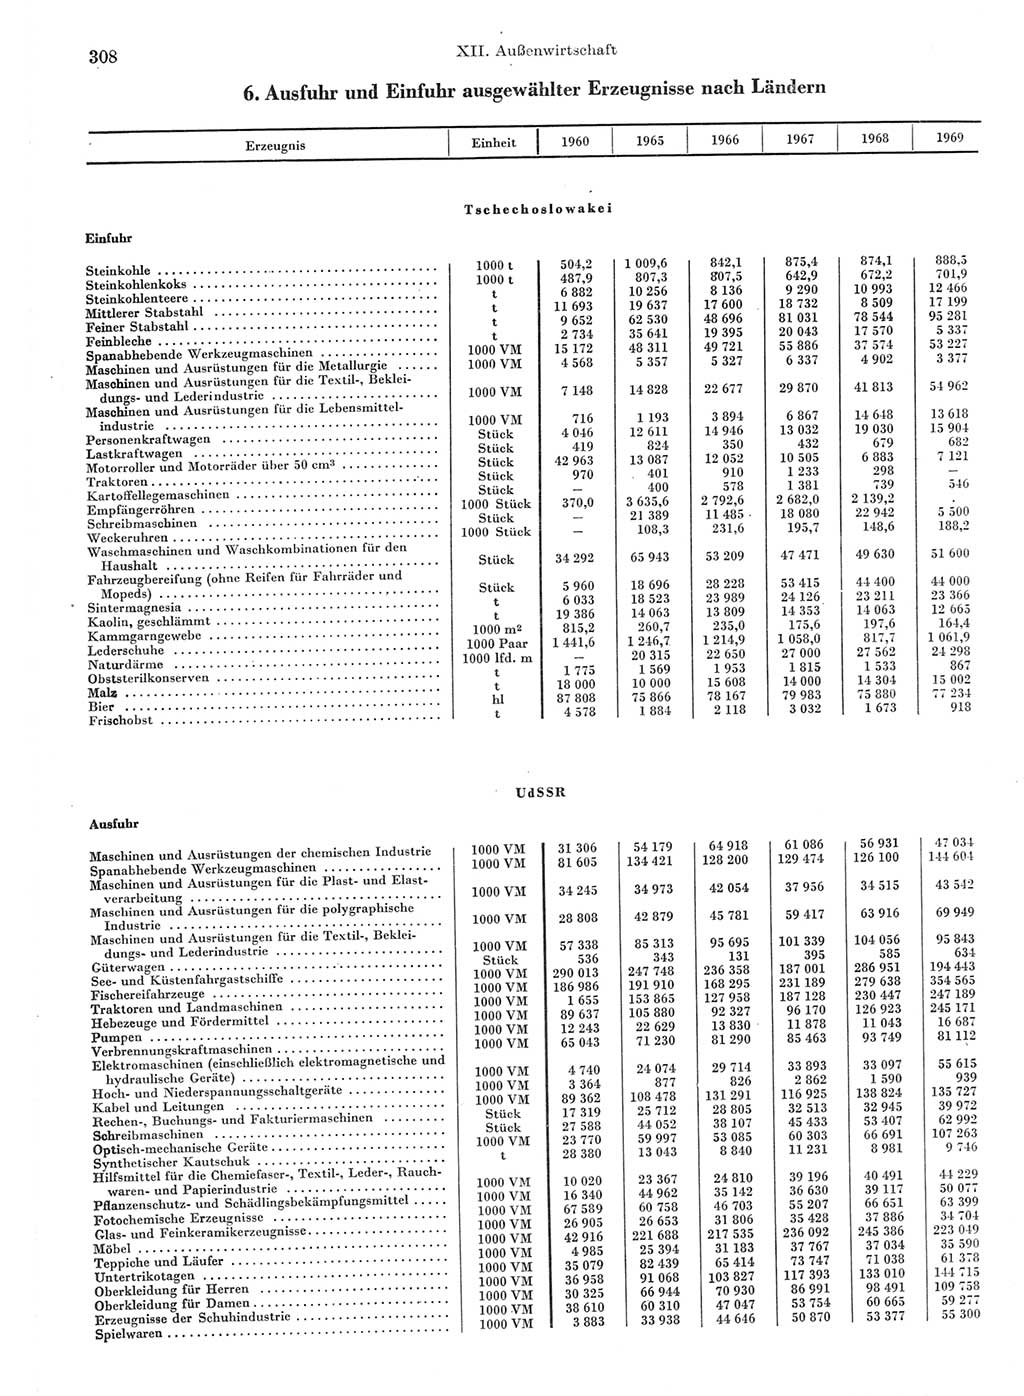 Statistisches Jahrbuch der Deutschen Demokratischen Republik (DDR) 1970, Seite 308 (Stat. Jb. DDR 1970, S. 308)